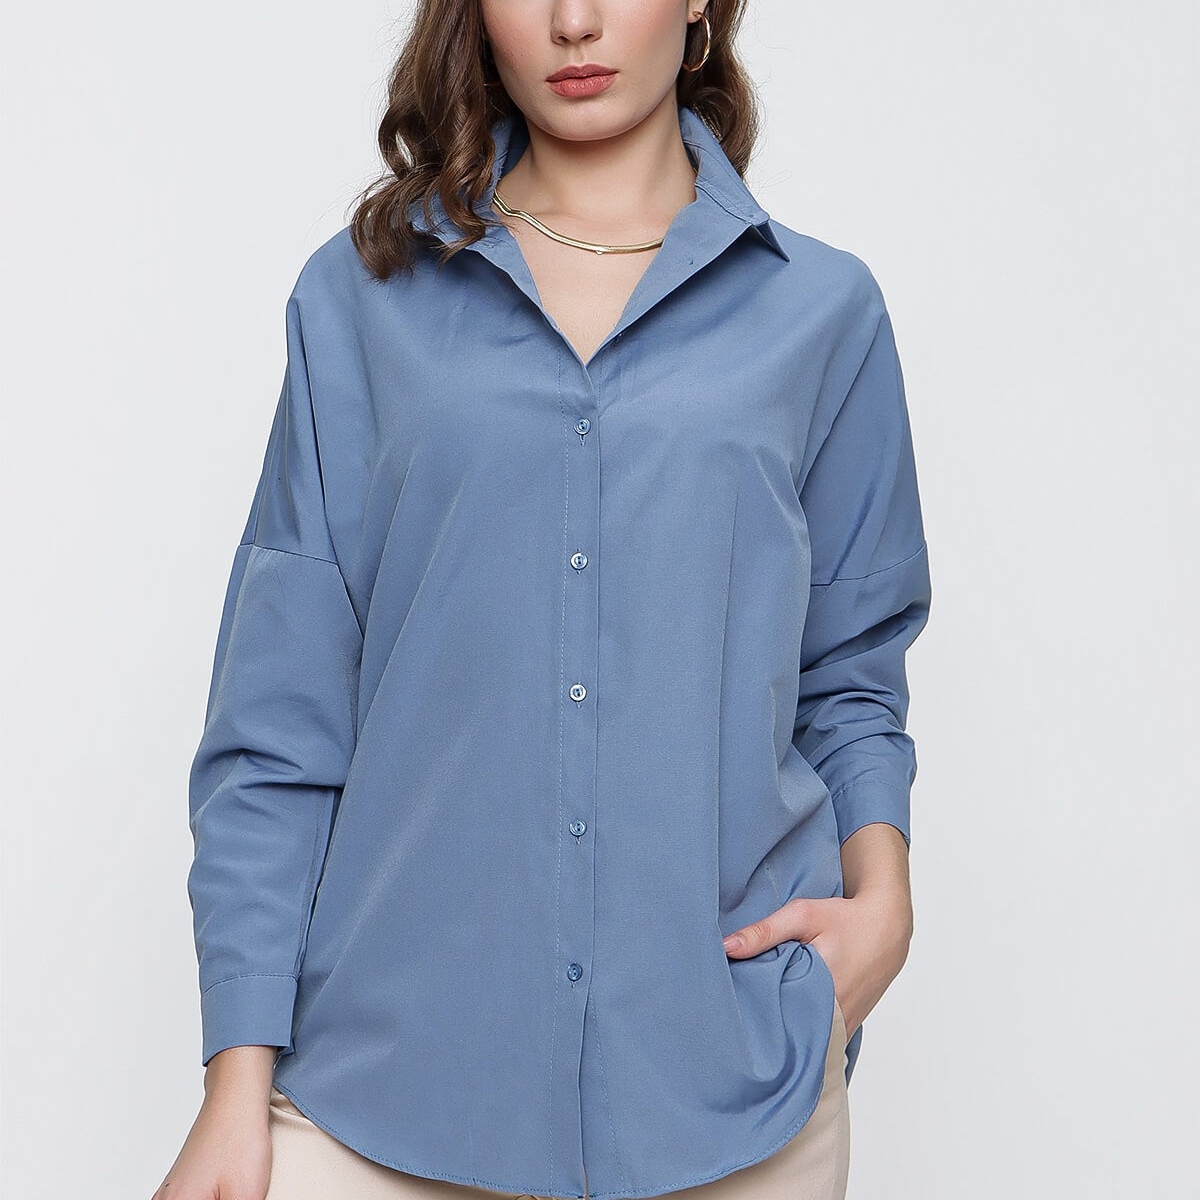 Flo Kadın Mavi Geniş Yaka Düz Gömlek. 2